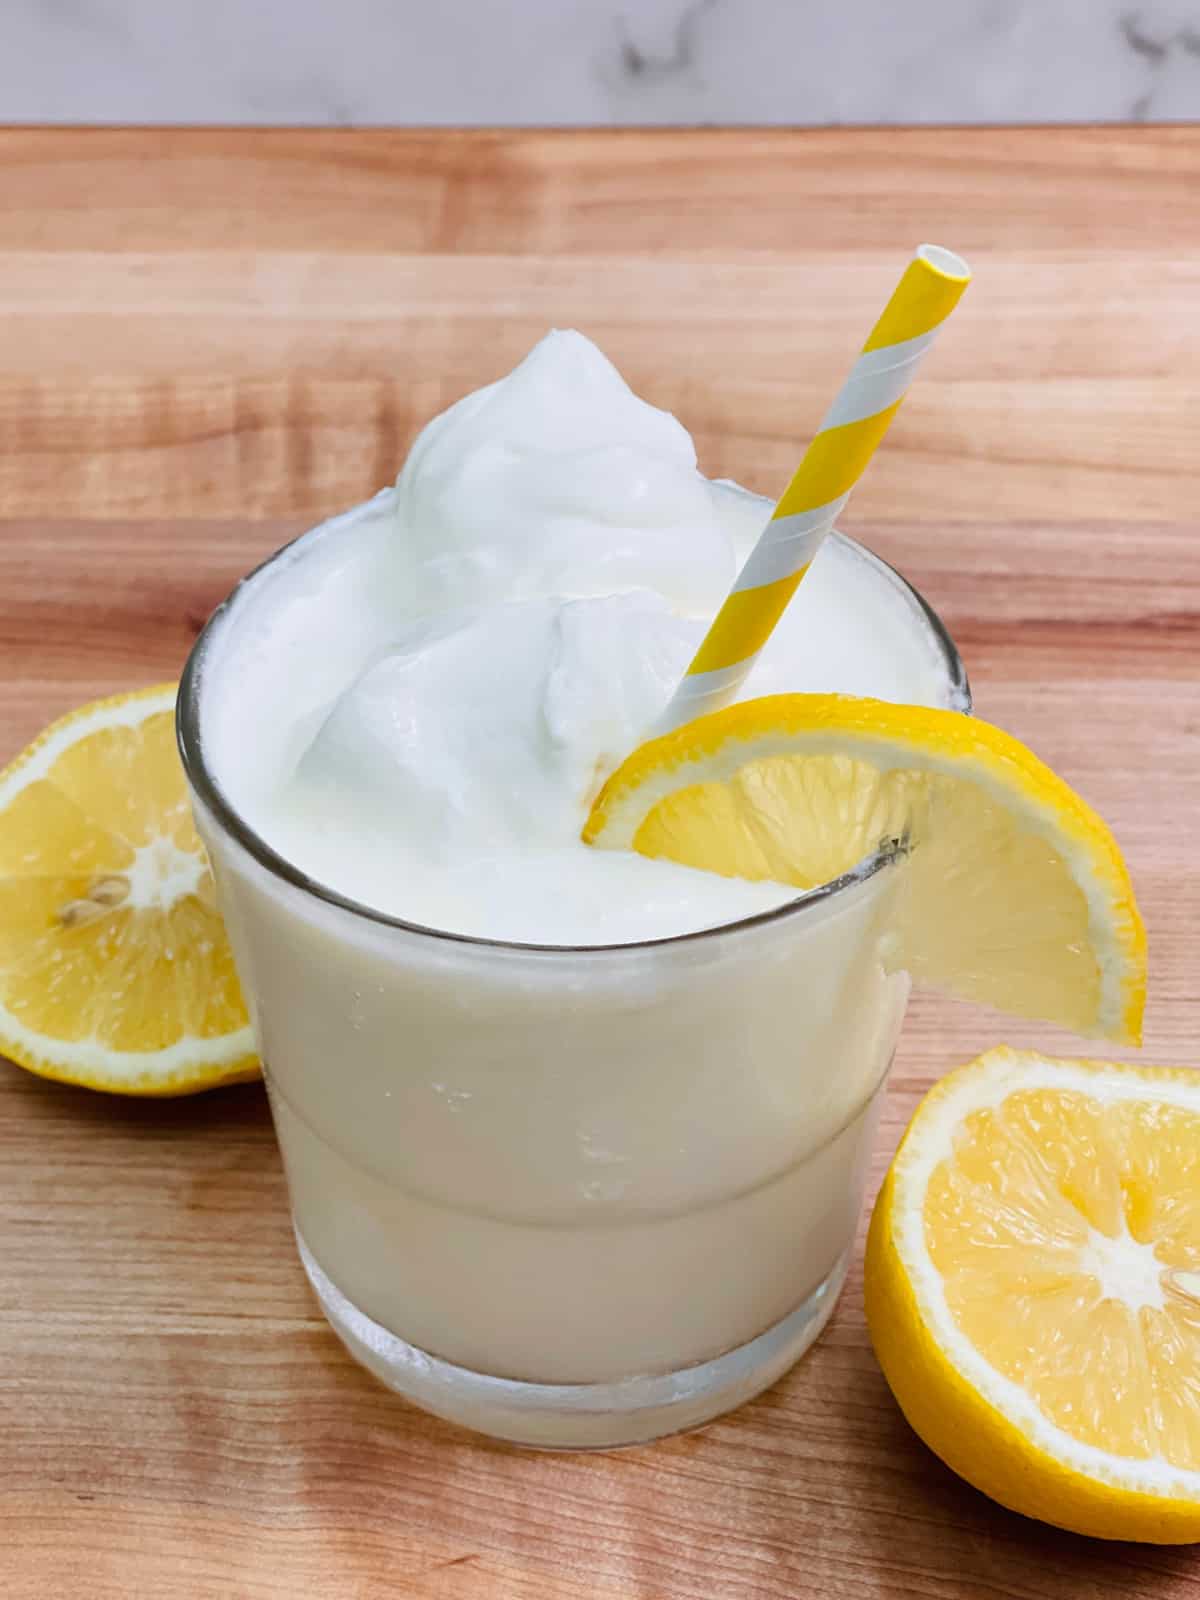 How to Make Whipped Lemonade: The Latest Summer TikTok Trend